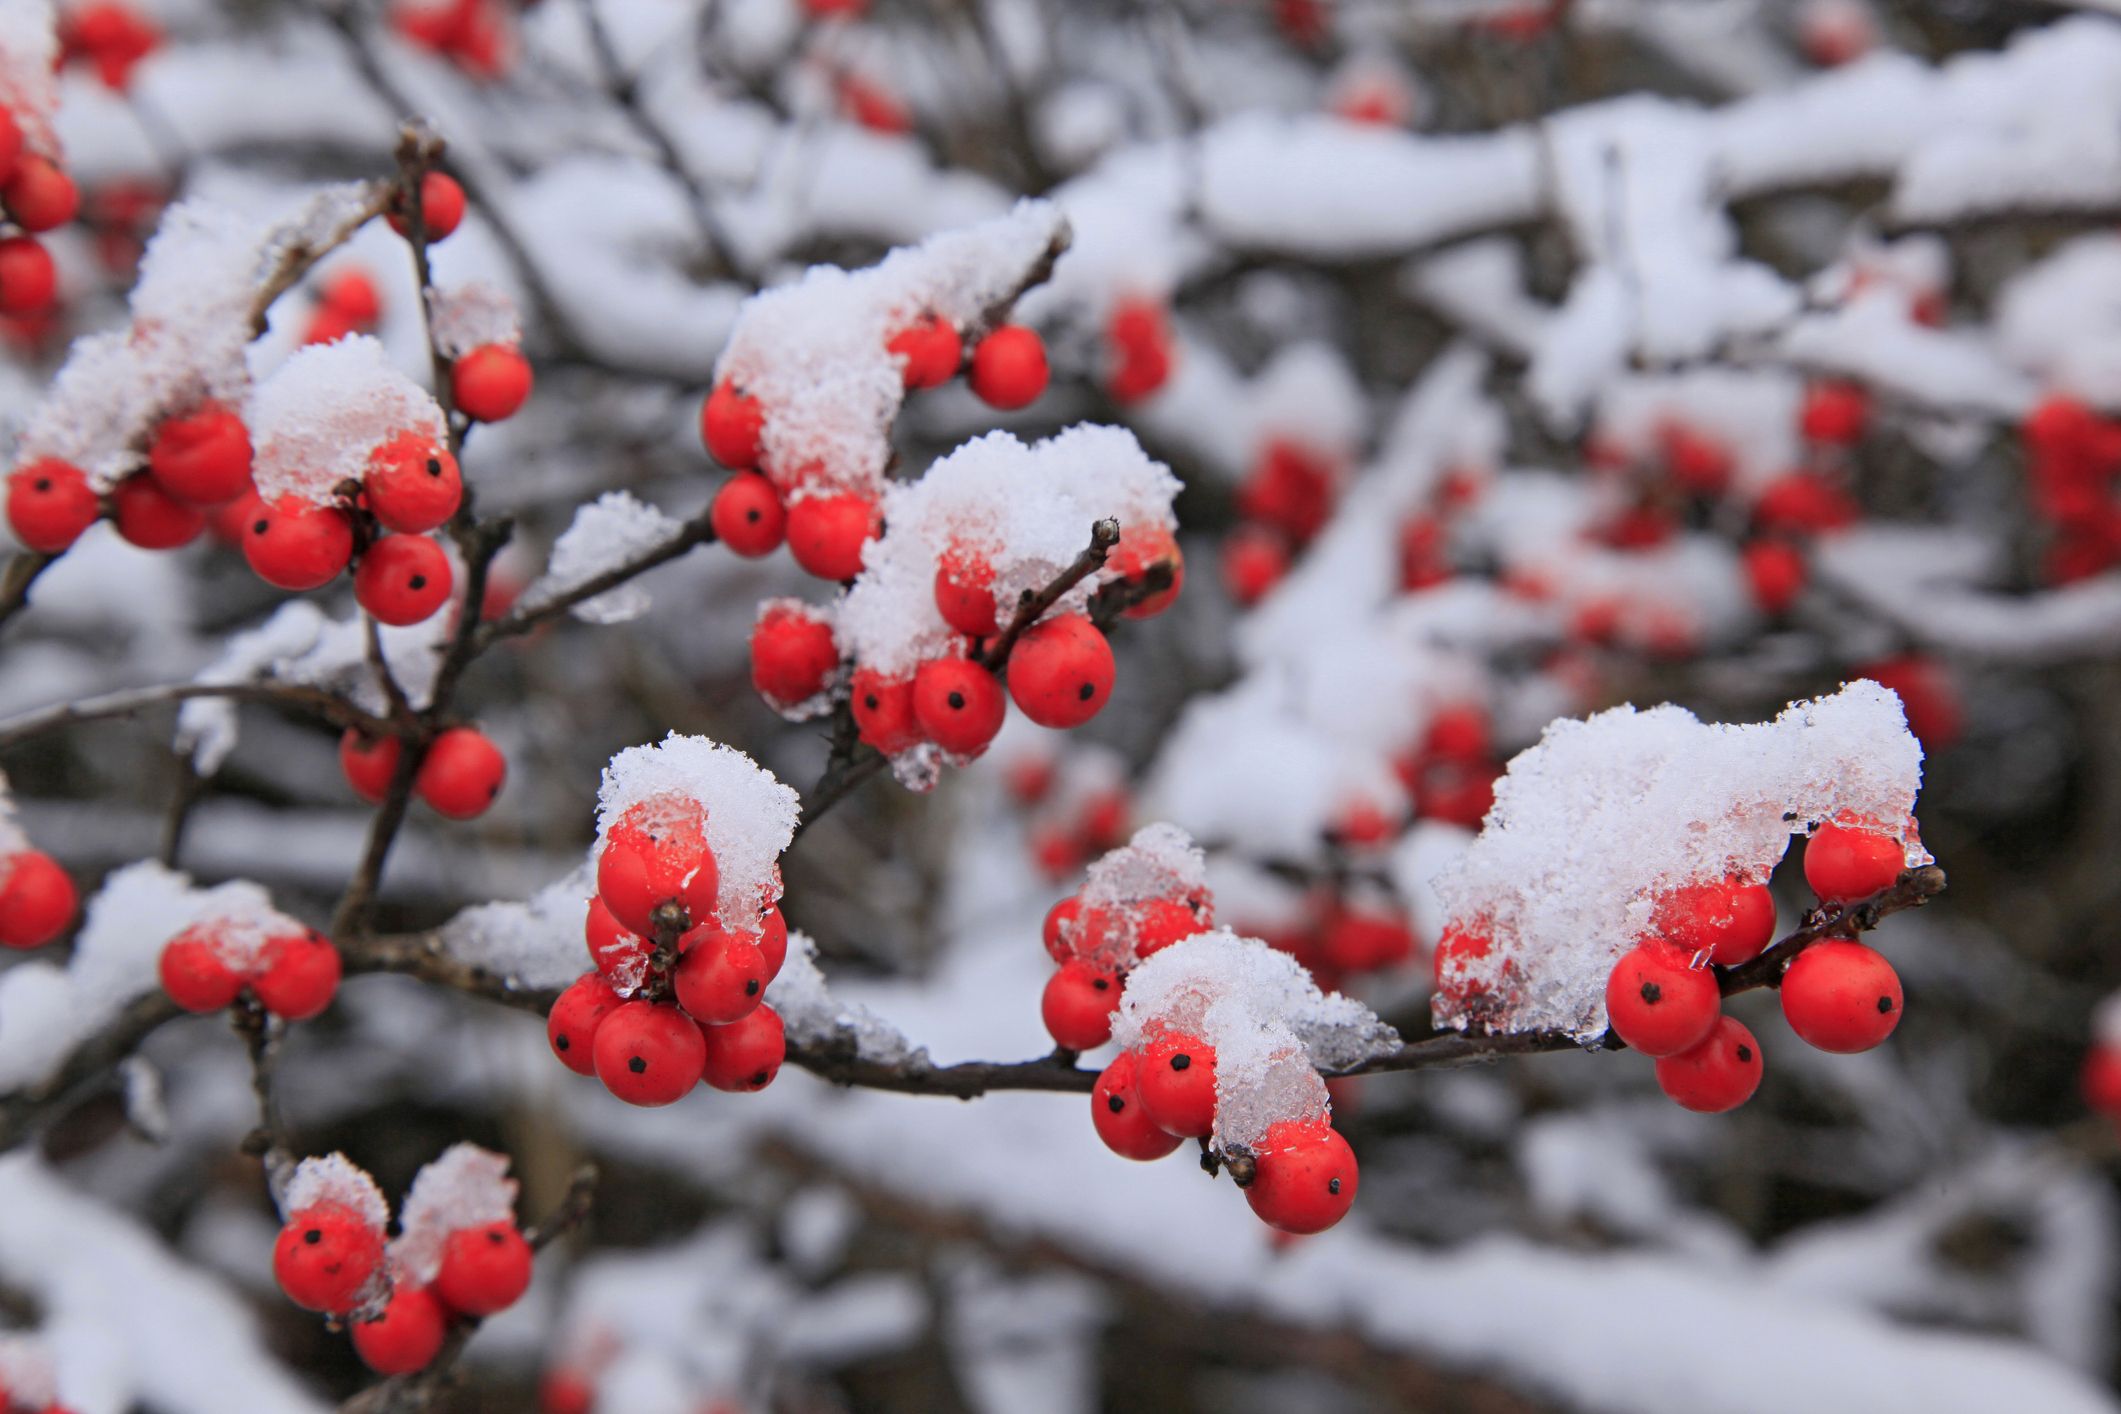 15 Best Winter Flowers - Flowers That Bloom in Winter